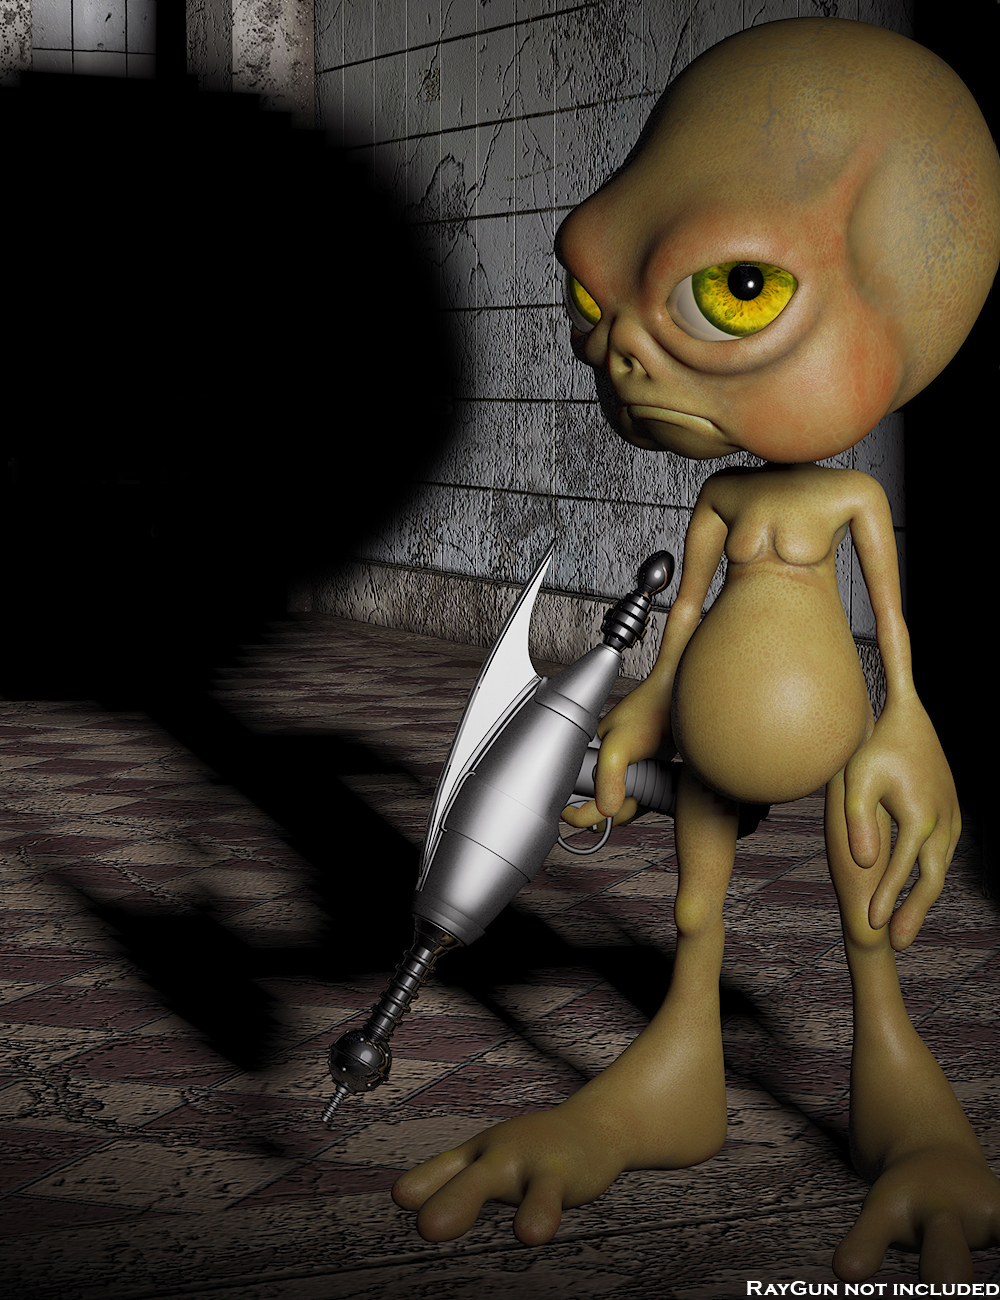 LiL Alien Guy by: TheDarkerSideOfArt, 3D Models by Daz 3D